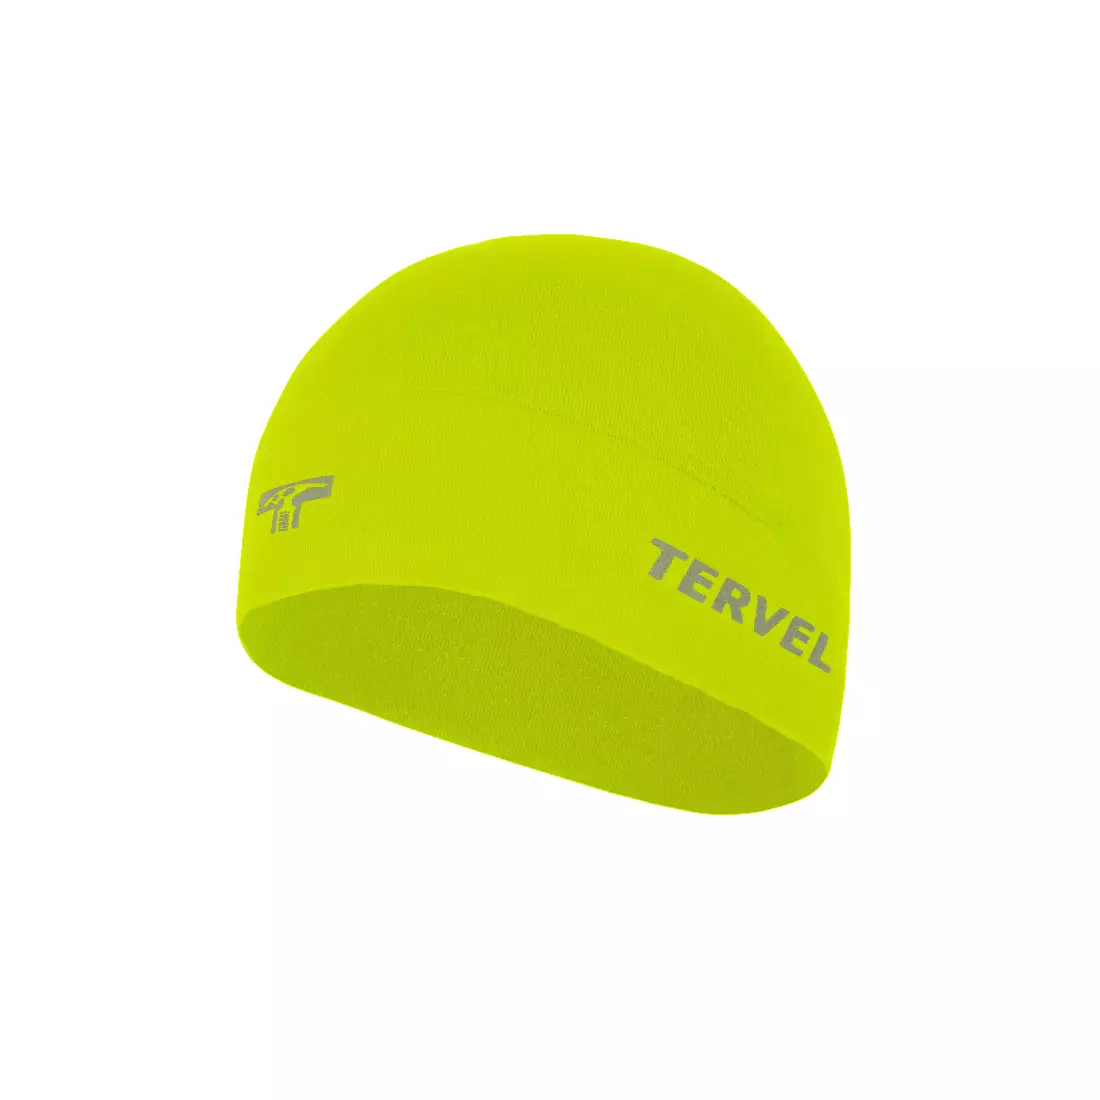 TERVEL 7001 - COMFORTLINE - tréningová čiapka, farba: Fluor, veľkosť: Univerzálna